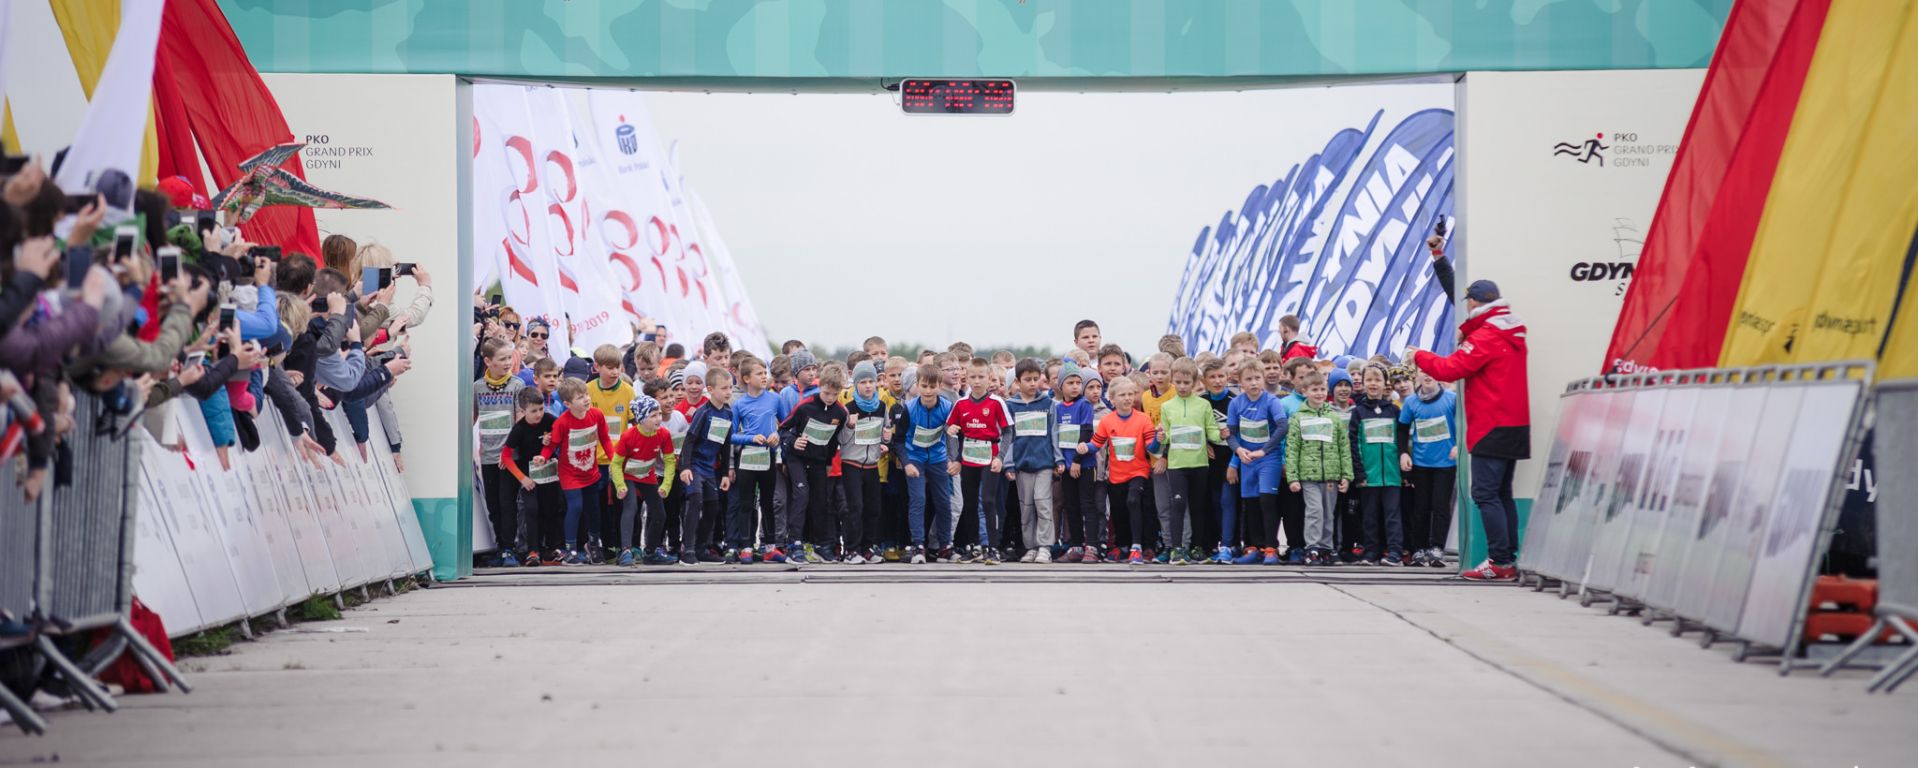 Dzieci podczas biegu Europejskiego w Gdyni 